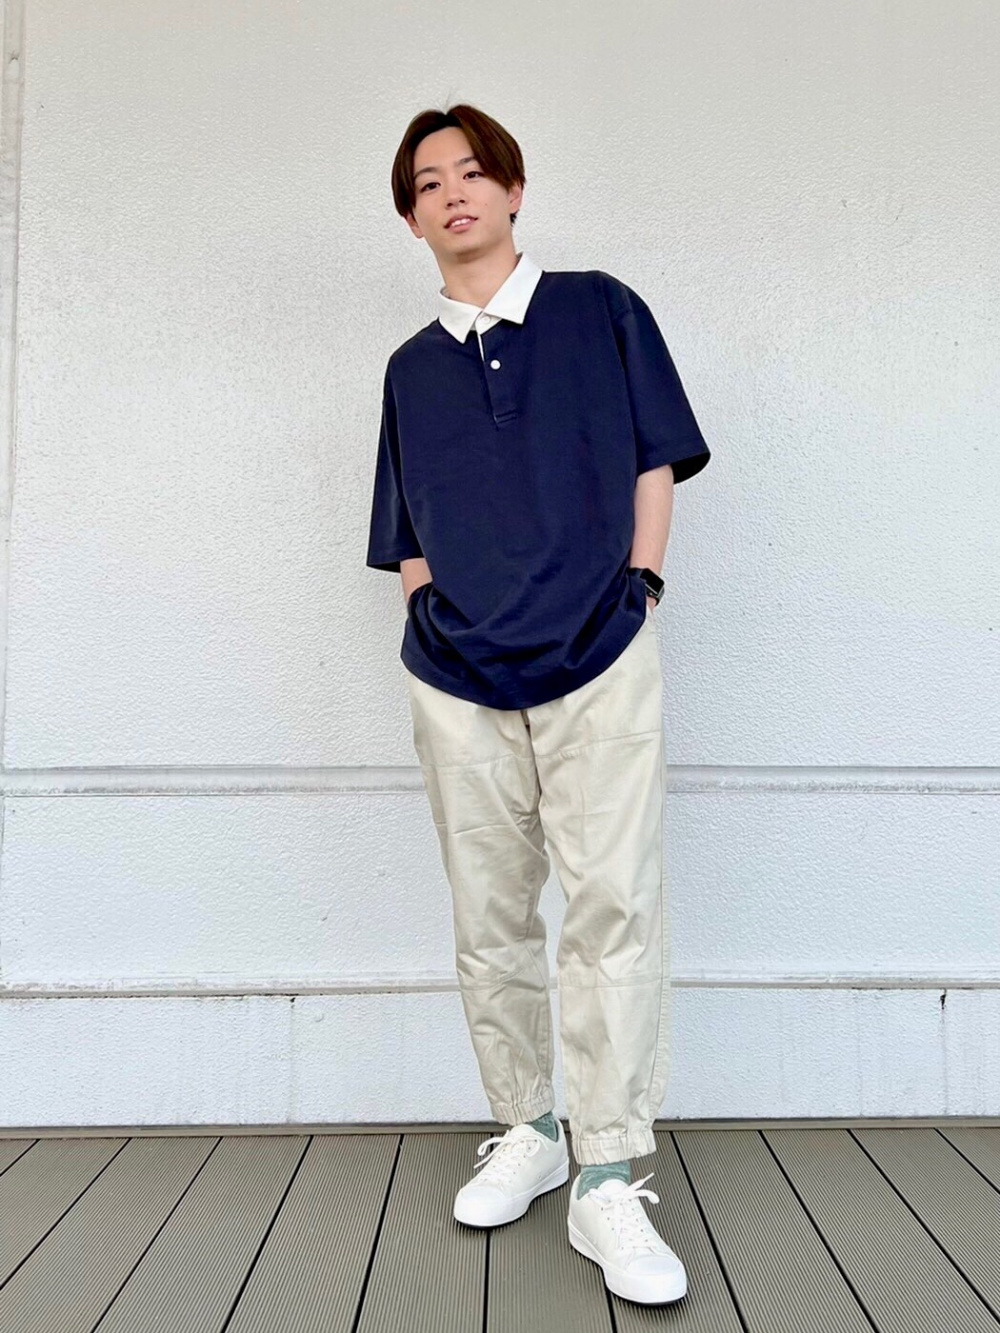 ラガーポロシャツ 半袖 ワイドフィットジョガーパンツ の着用コーディネート ユニクロ